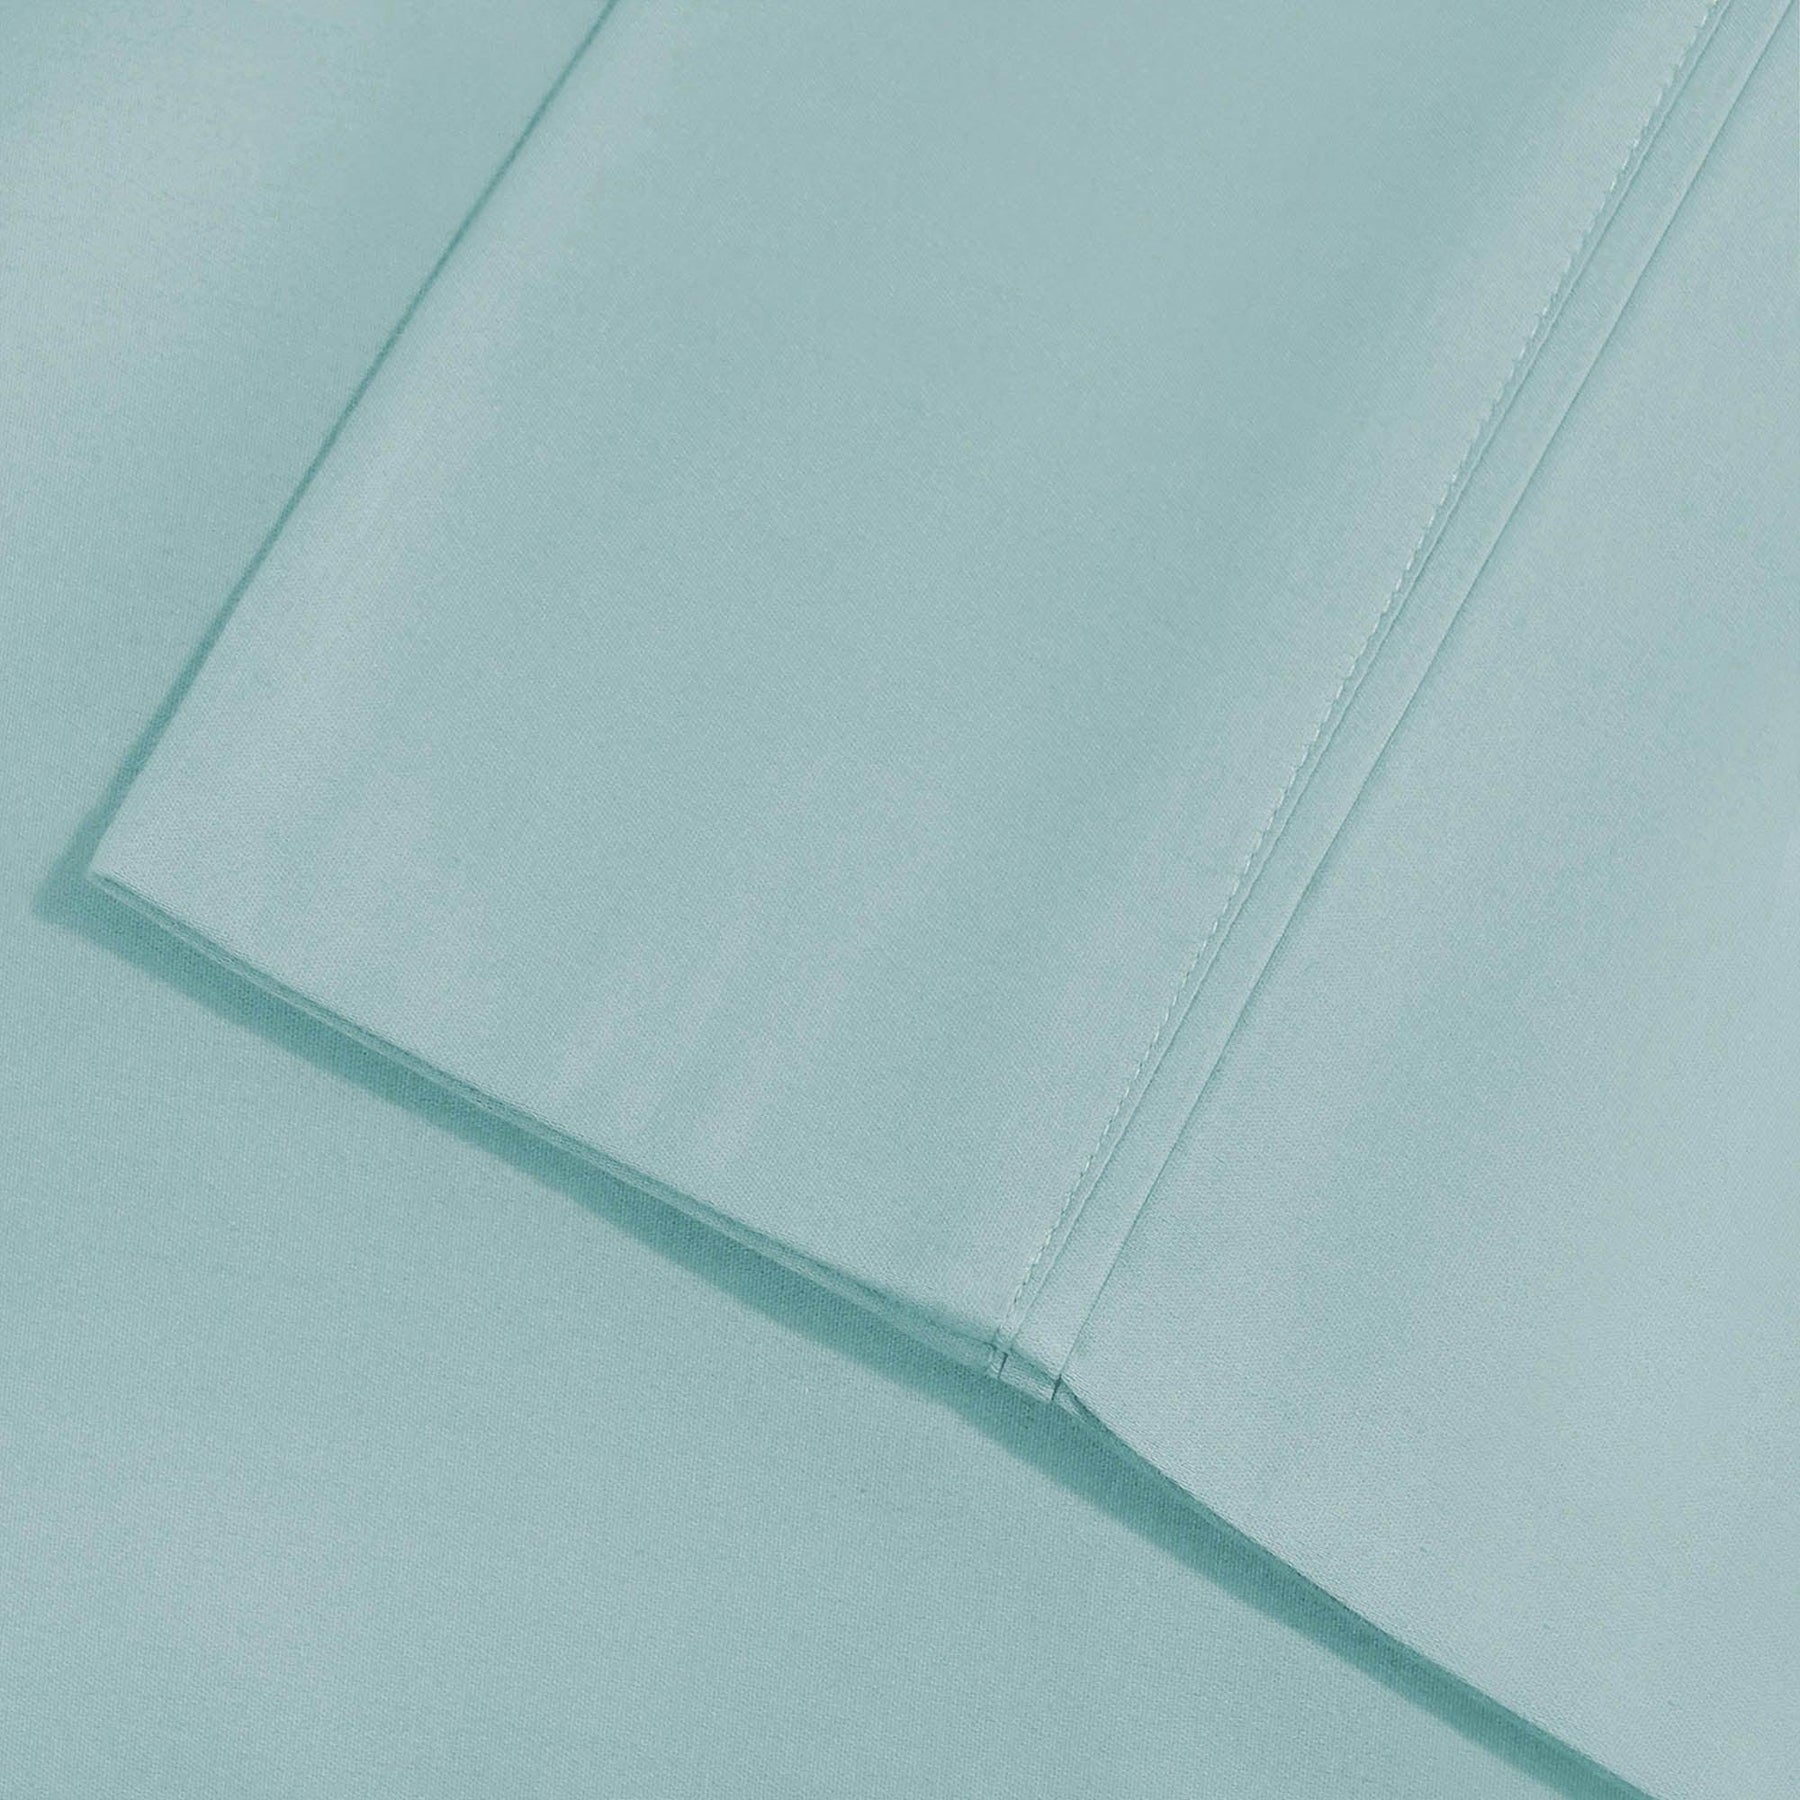  Superior Solid Count Cotton Blend Deep Pocket Sheet Set - Light Blue